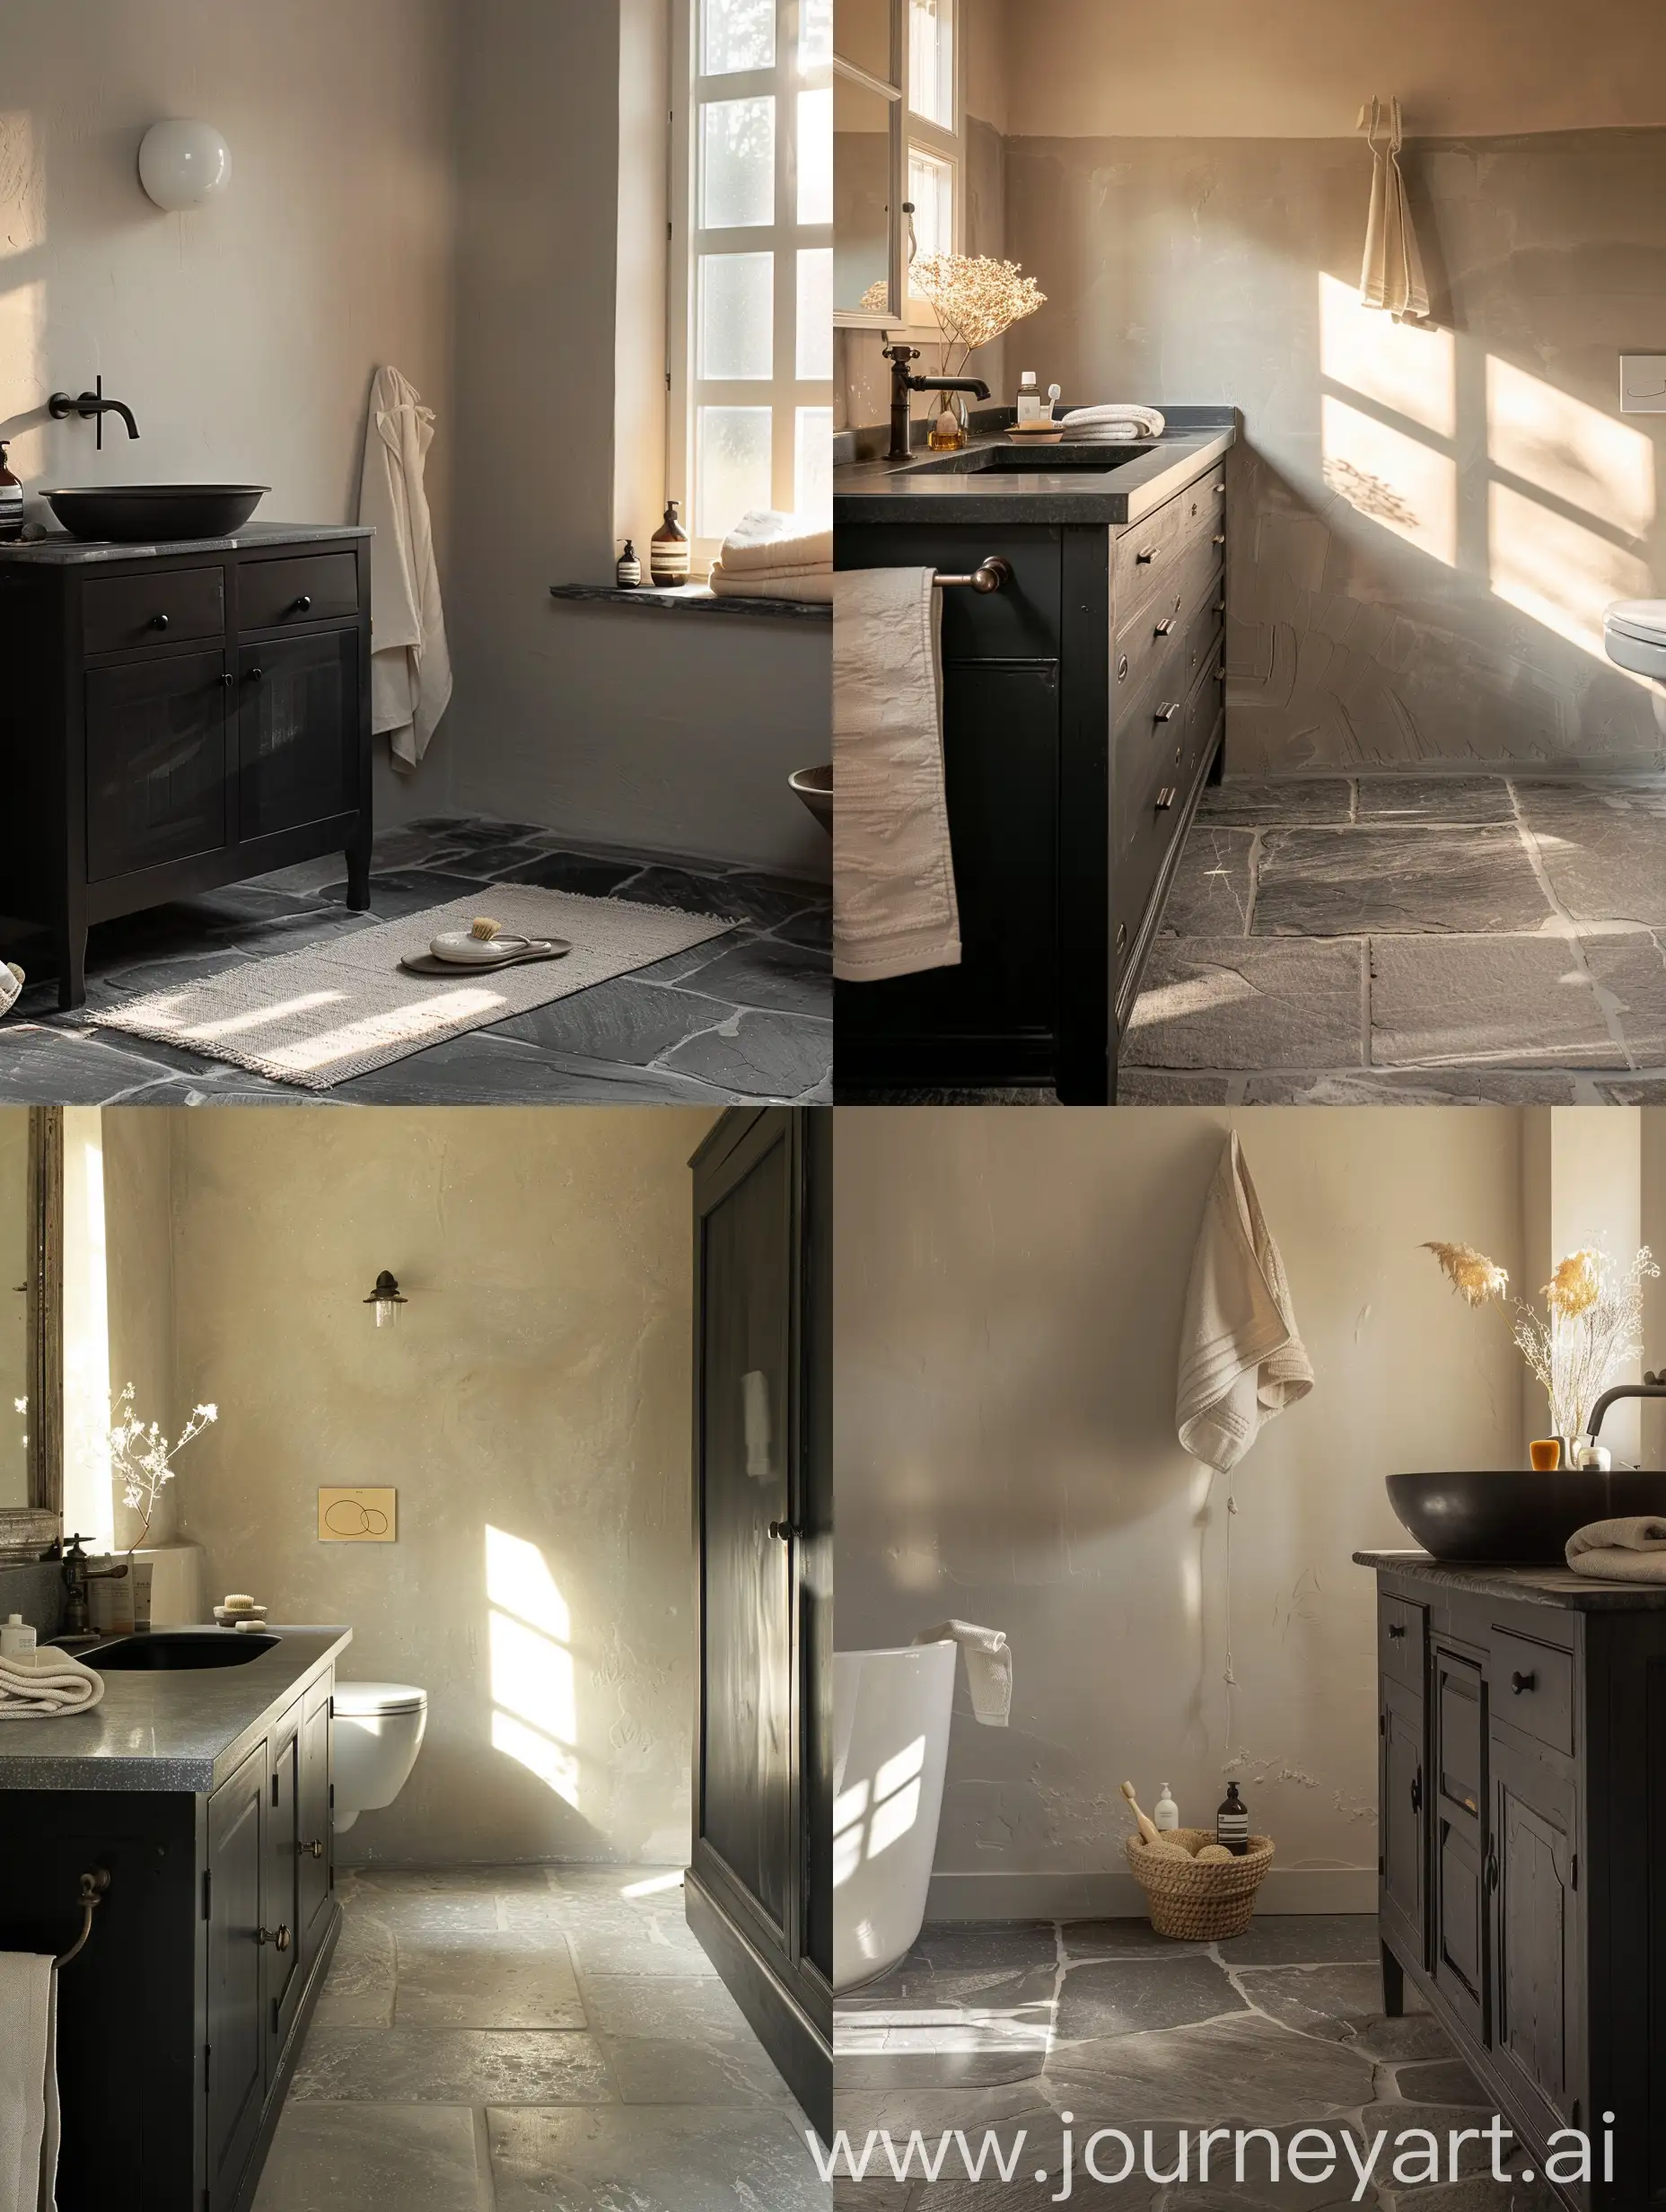 bagno con mobiletto del lavandino nero, pavimento gres grigio, decorazioni crema,vista laterale luce calda del mattino